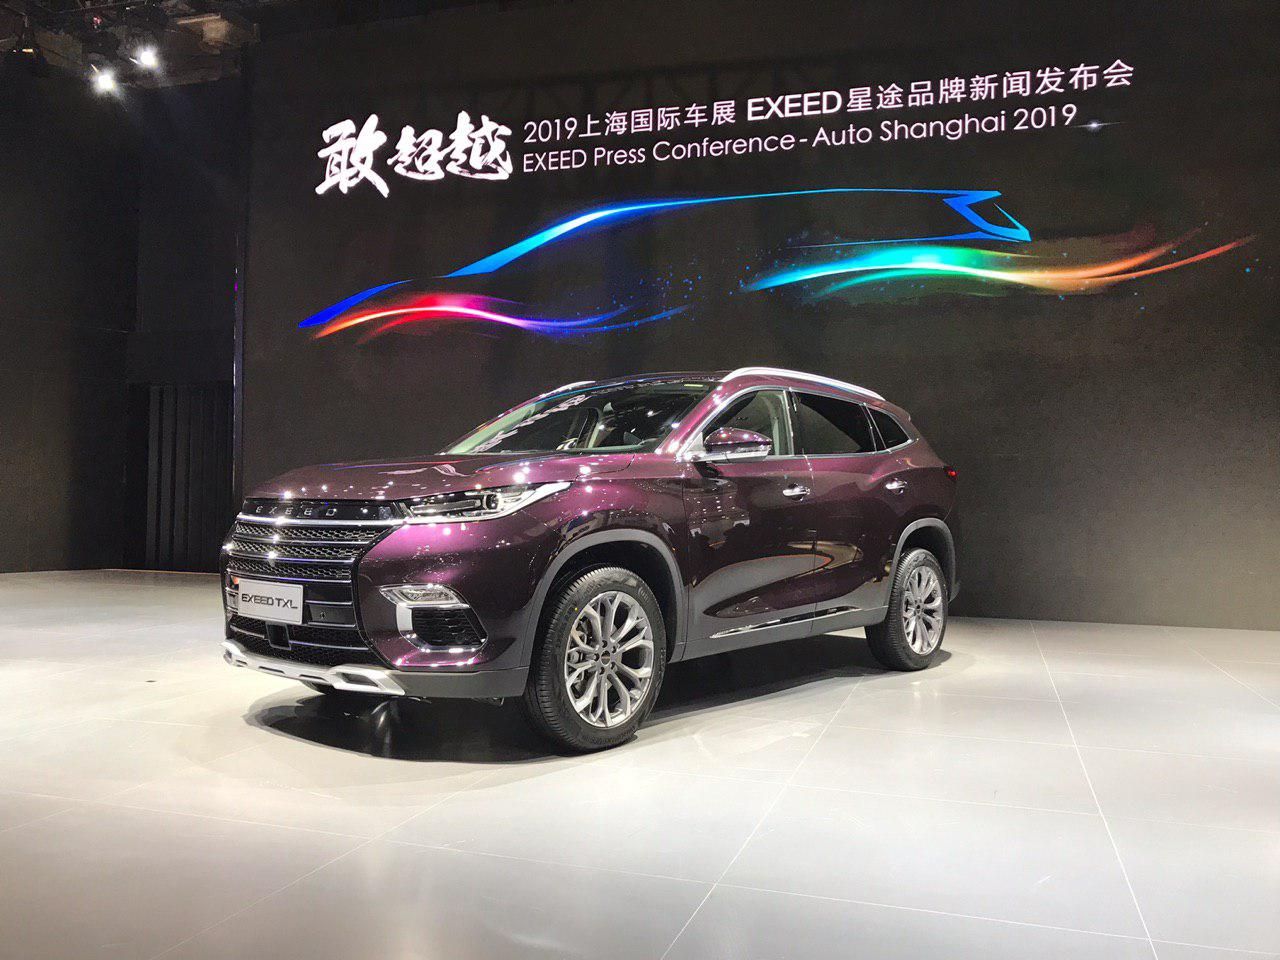 نگاهی به چری اکسید TXL در نمایشگاه خودرو شانگهای